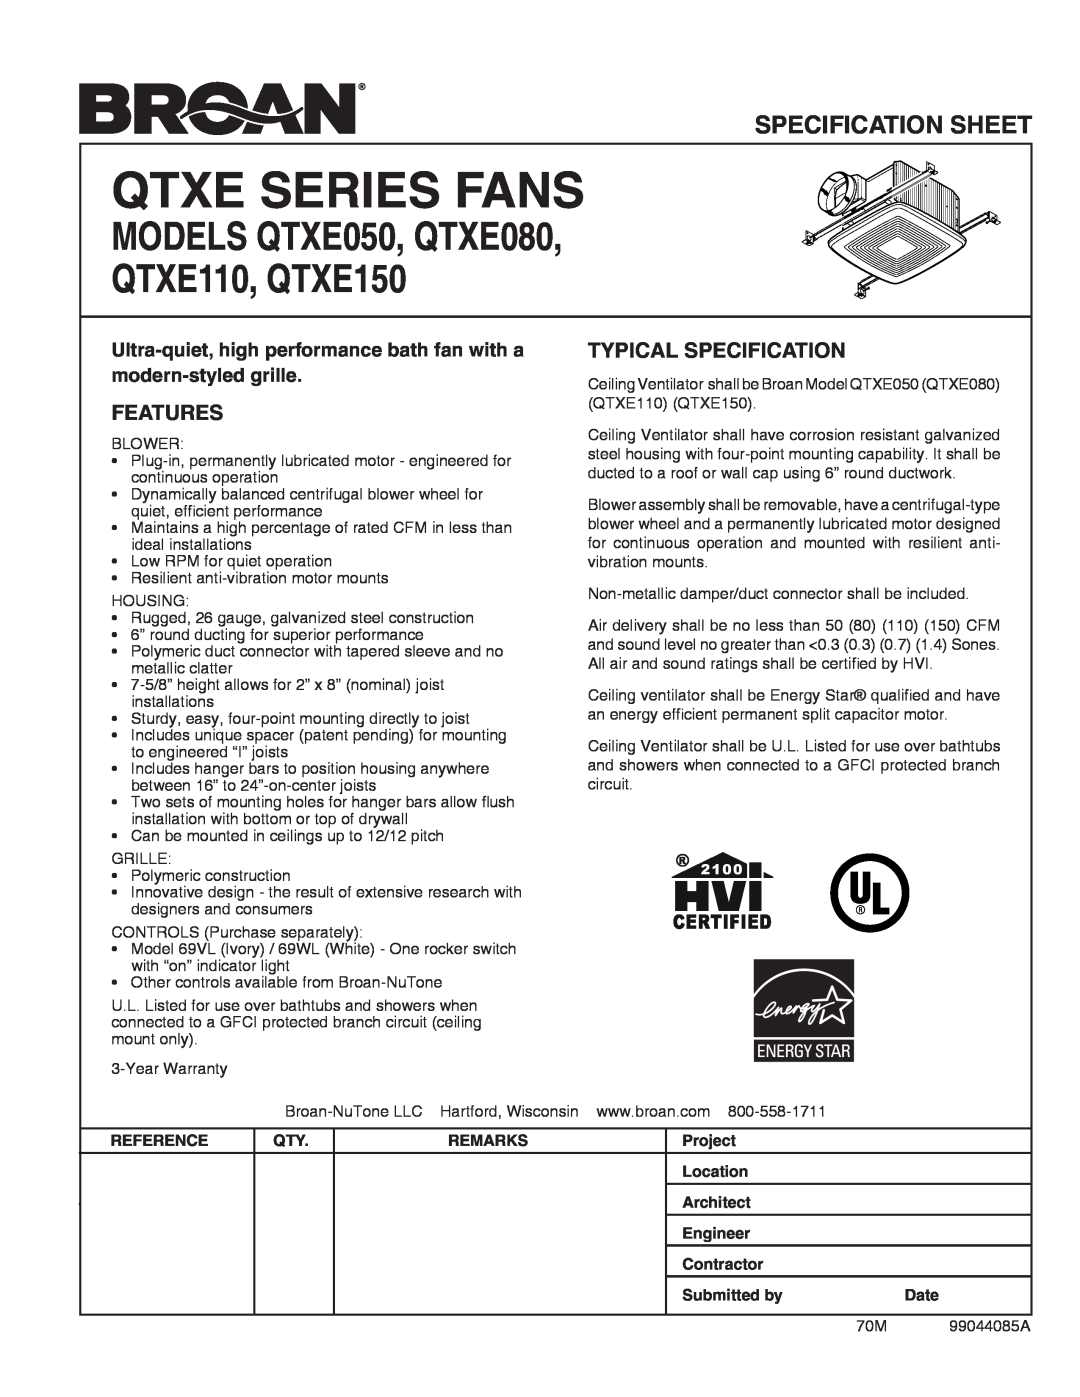 Broan specifications Features, Typical Specification, QTXE SErIes Fans, models QTXE050, QTXE080, QTXE110, QTXE150 